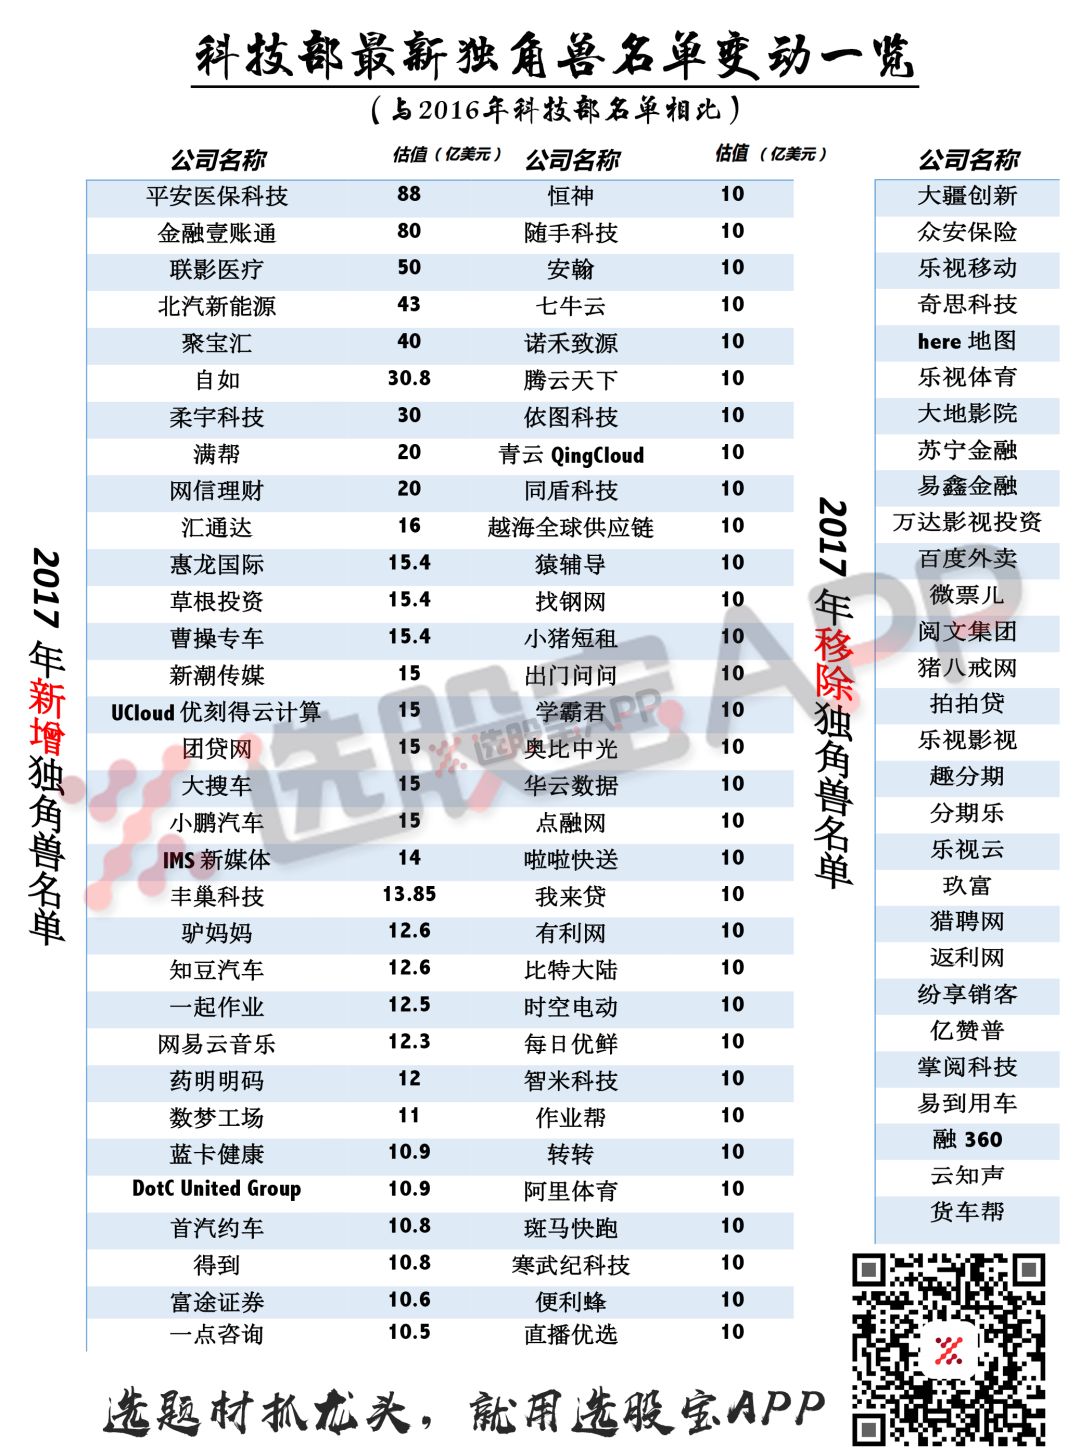 这是最权威的中国2017年独角兽名单(一定要收